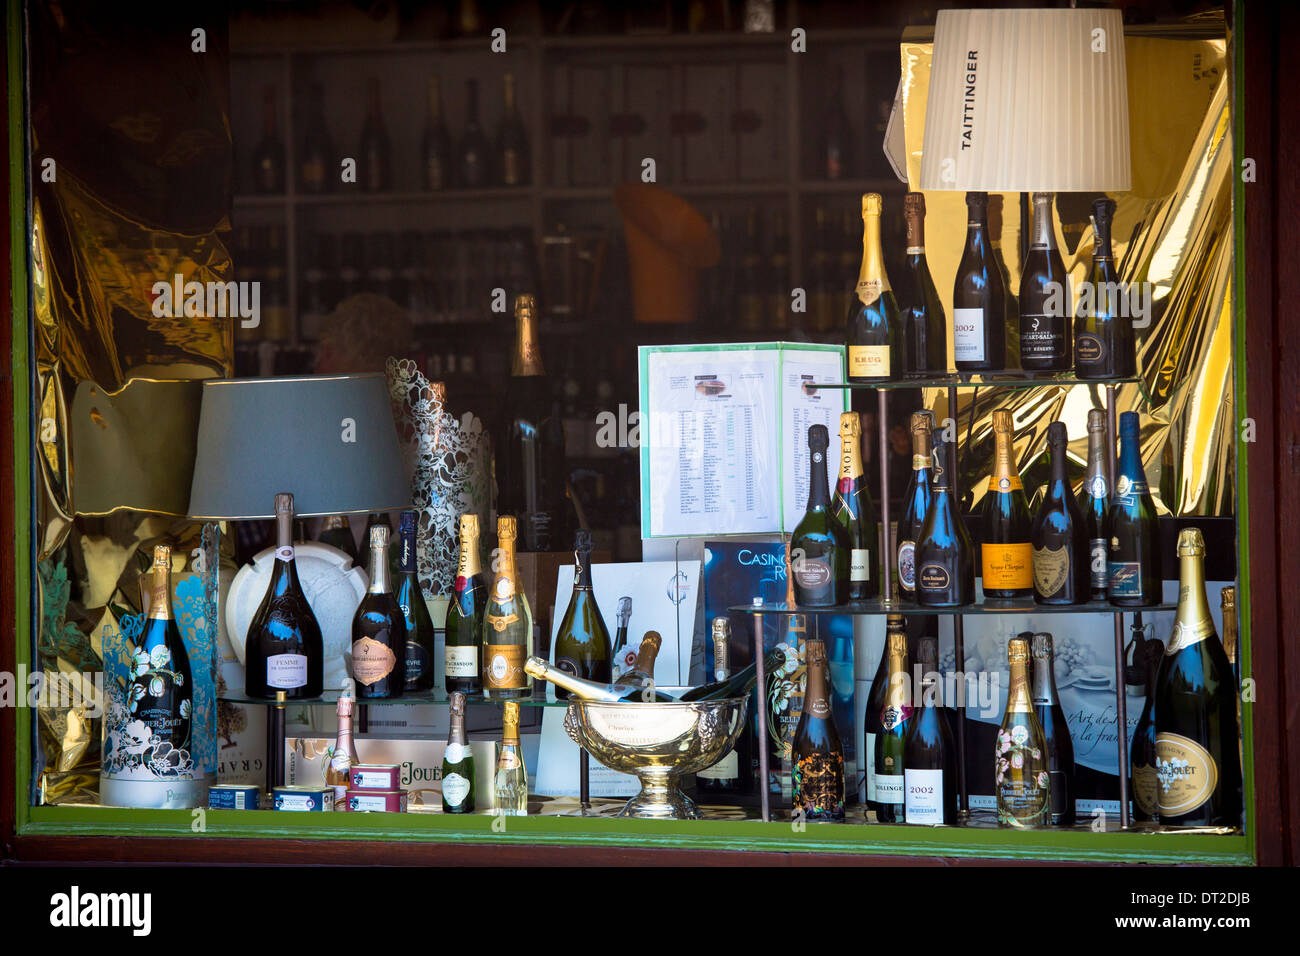 Champagner Laurent Perrier Perrier-Jouet Veuve Clicquot Krug Moet Chandon Bollinger Ruinart Louis Roederer Pol Roger Taittinger Stockfoto